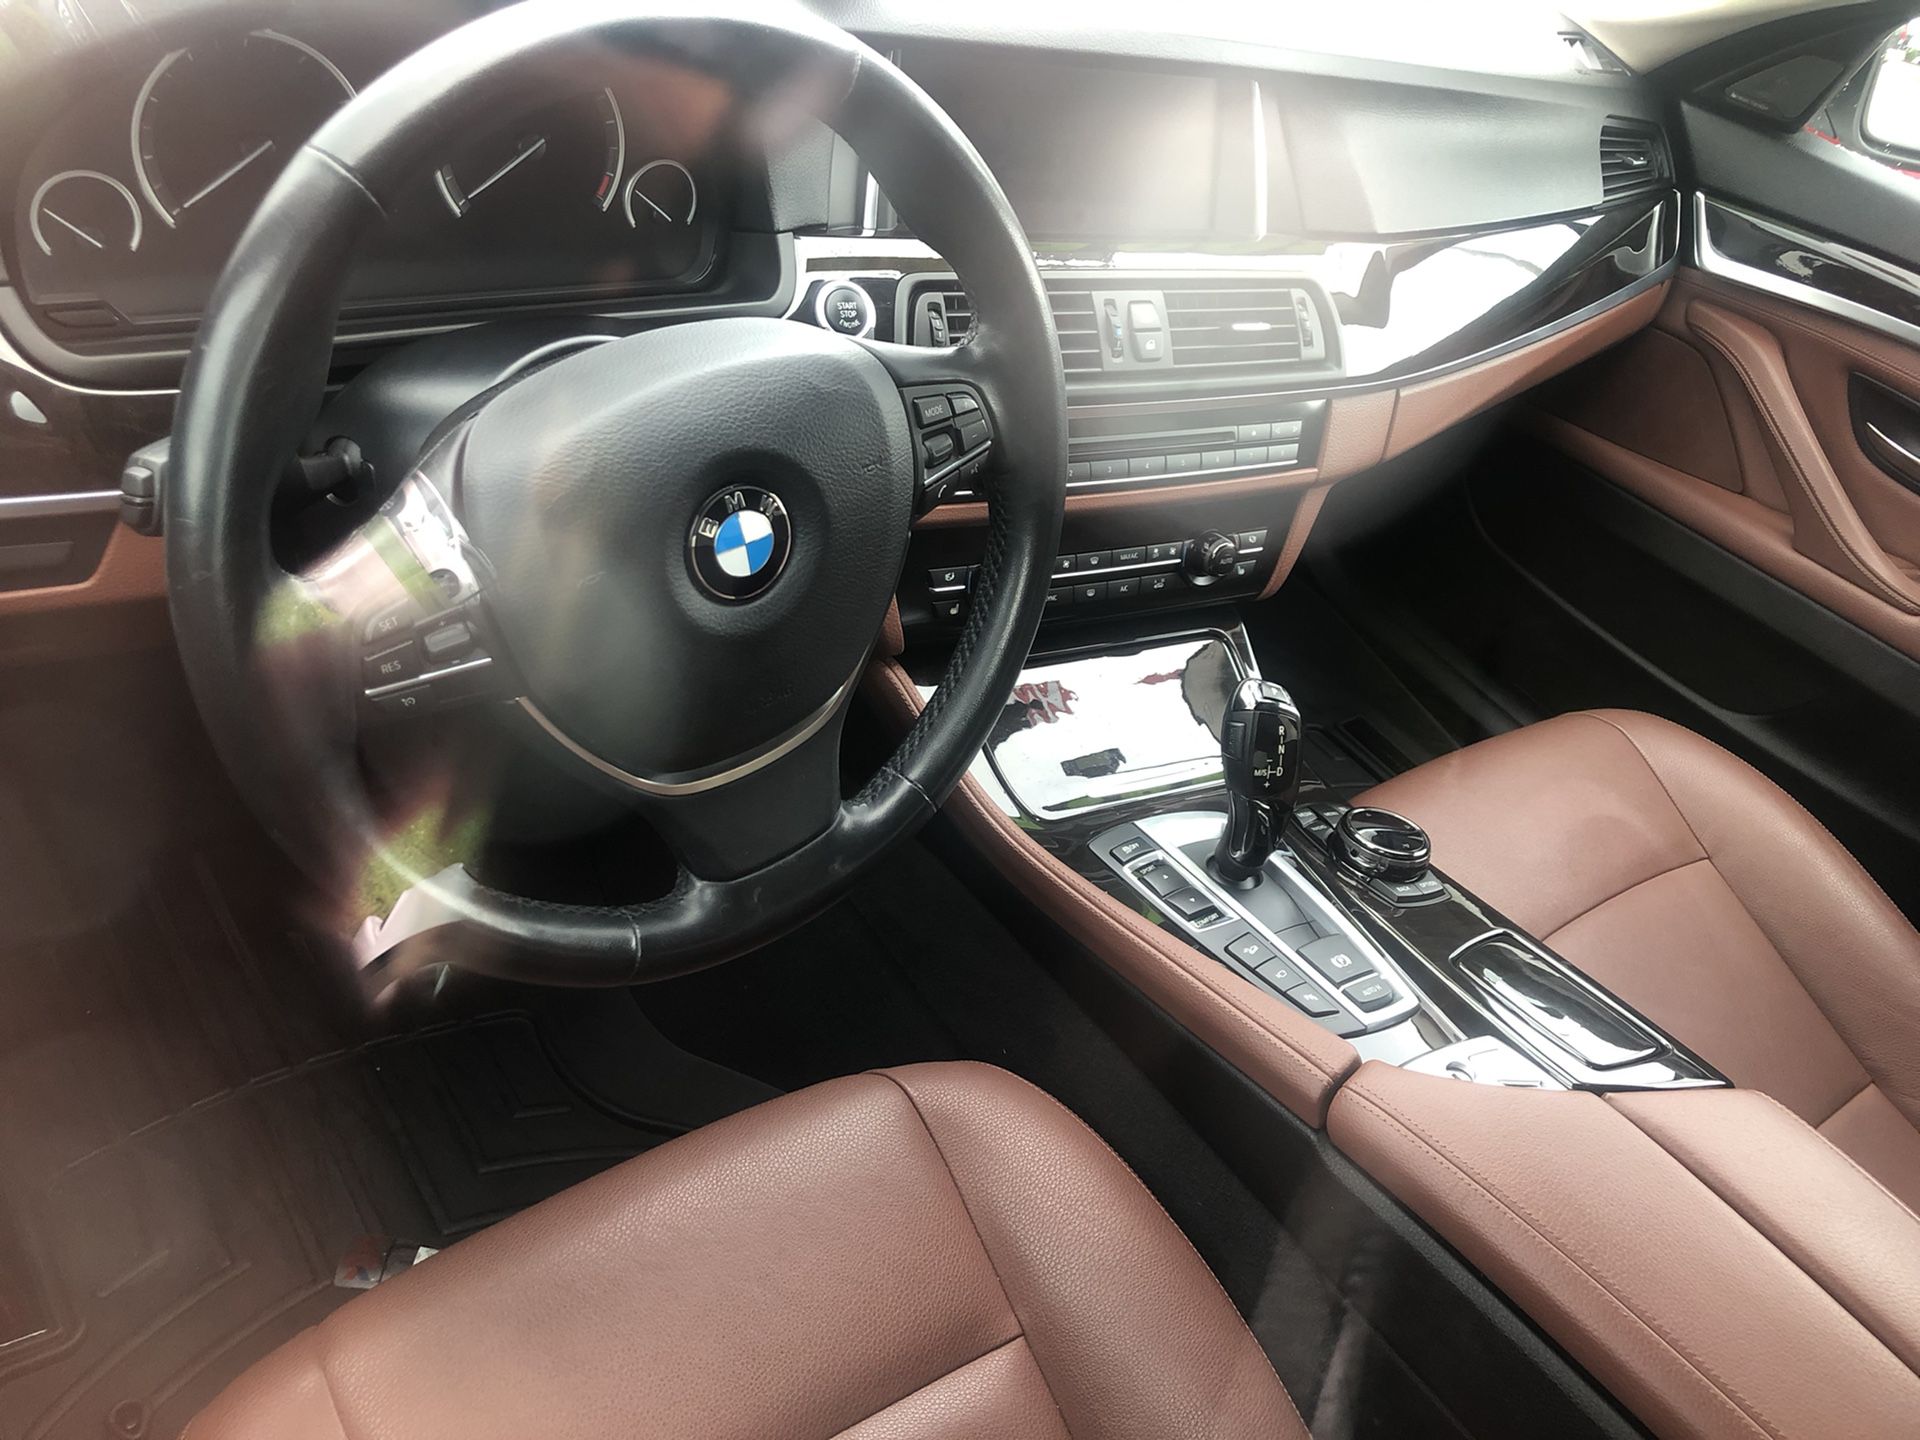 2015 BMW 535i